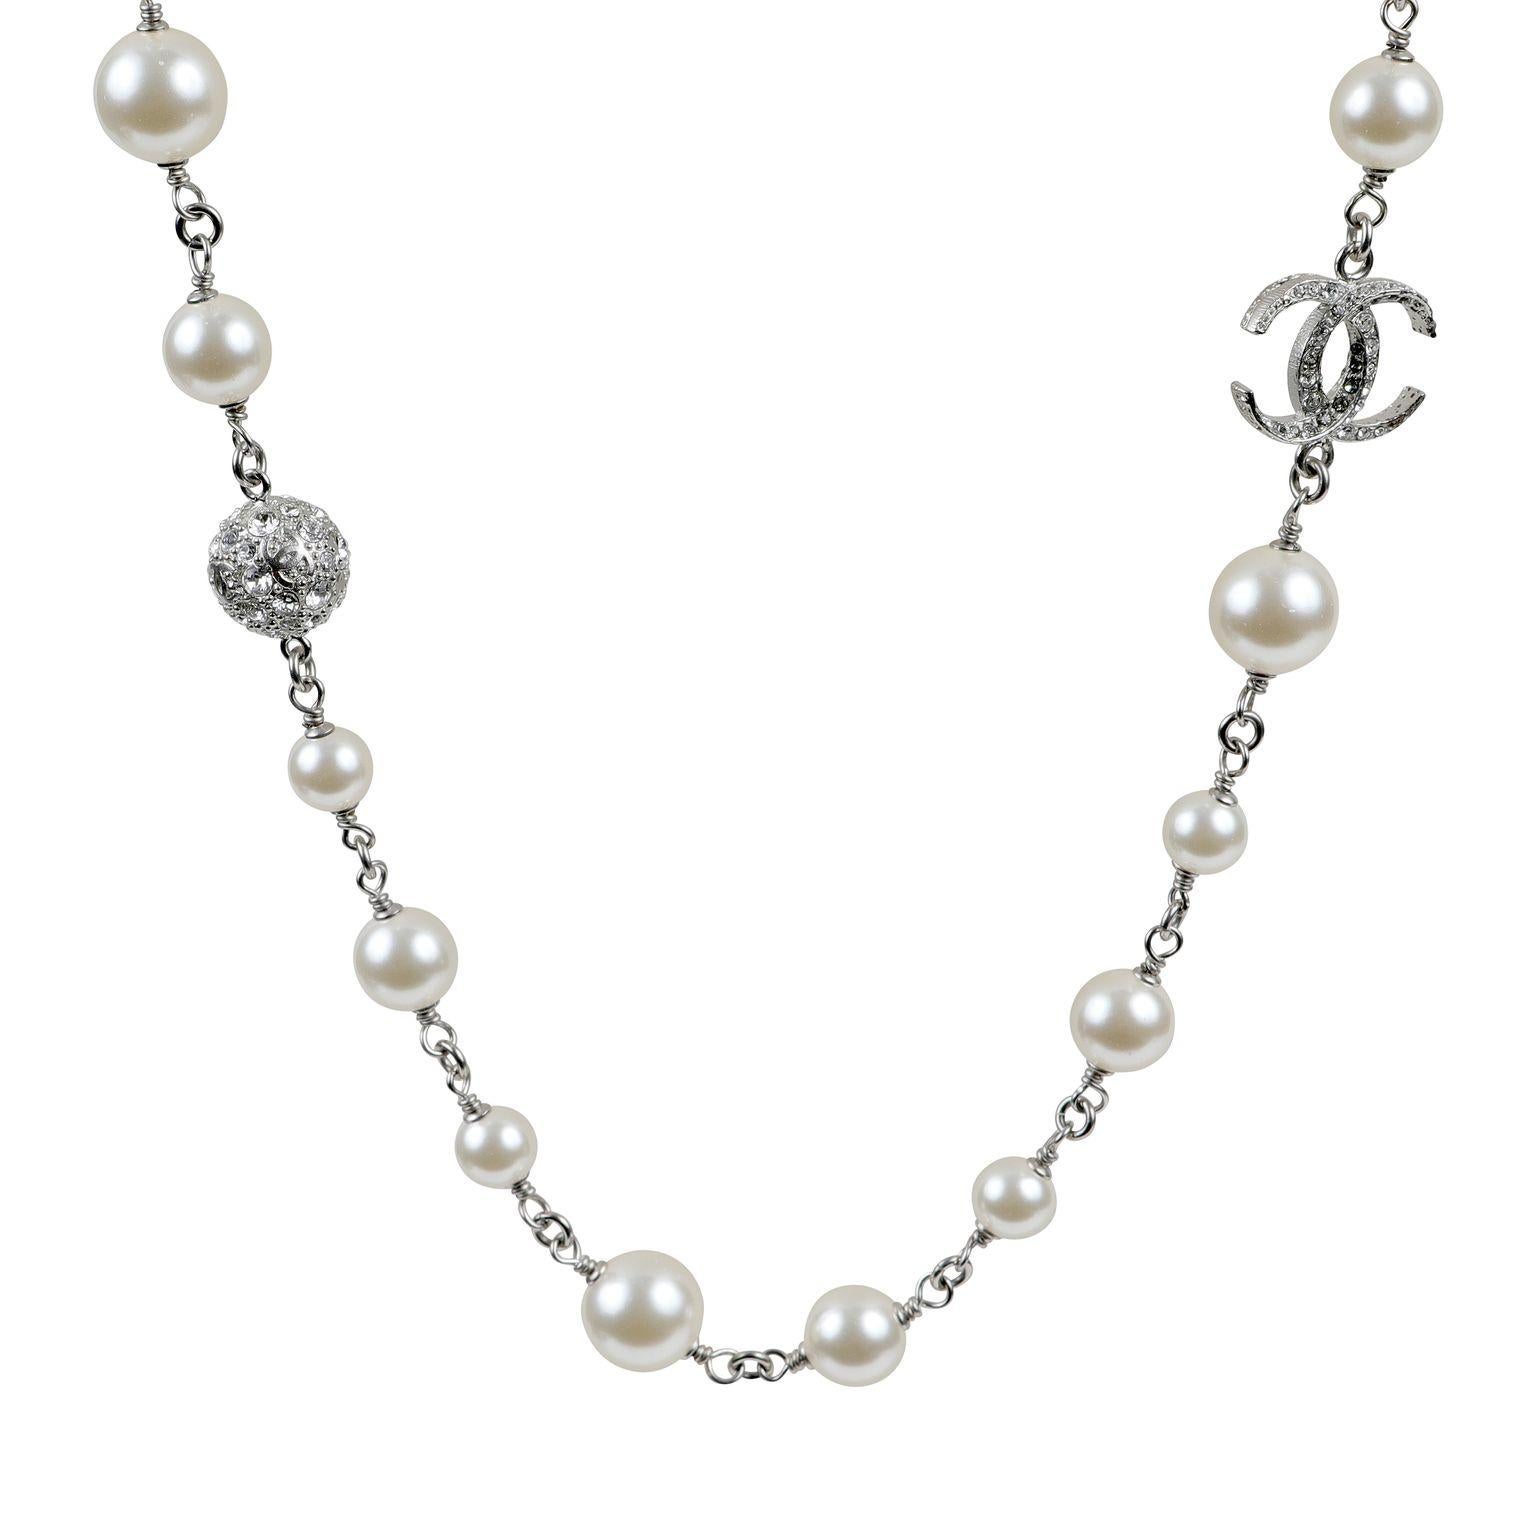 Dies ist authentisch. Chanel Perle und Kristall CC Halskette ist tadellos.  Einzelner Strang aus weißen Kunstperlen mit Silber.  Ineinandergreifende CC-Kristalle und Kugeln, die entlang der Kette verteilt sind.  Inklusive Tasche oder Box. 

ACO